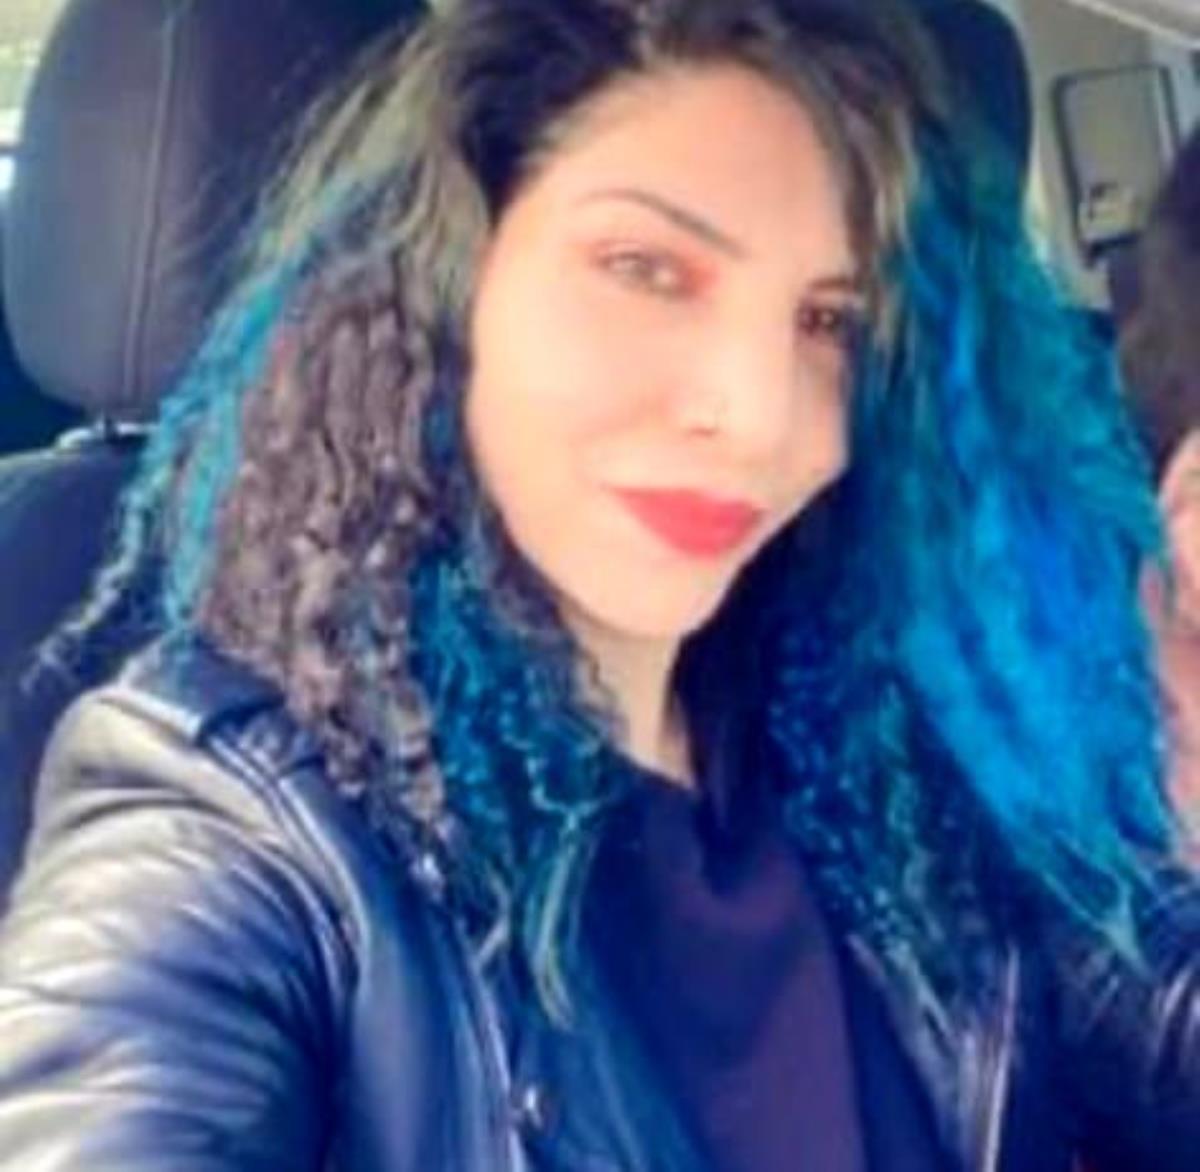 Silivri'de 6 kişinin öldüğü kazada hayatını kaybeden bayanın acıklı kıssası ortaya açıktı